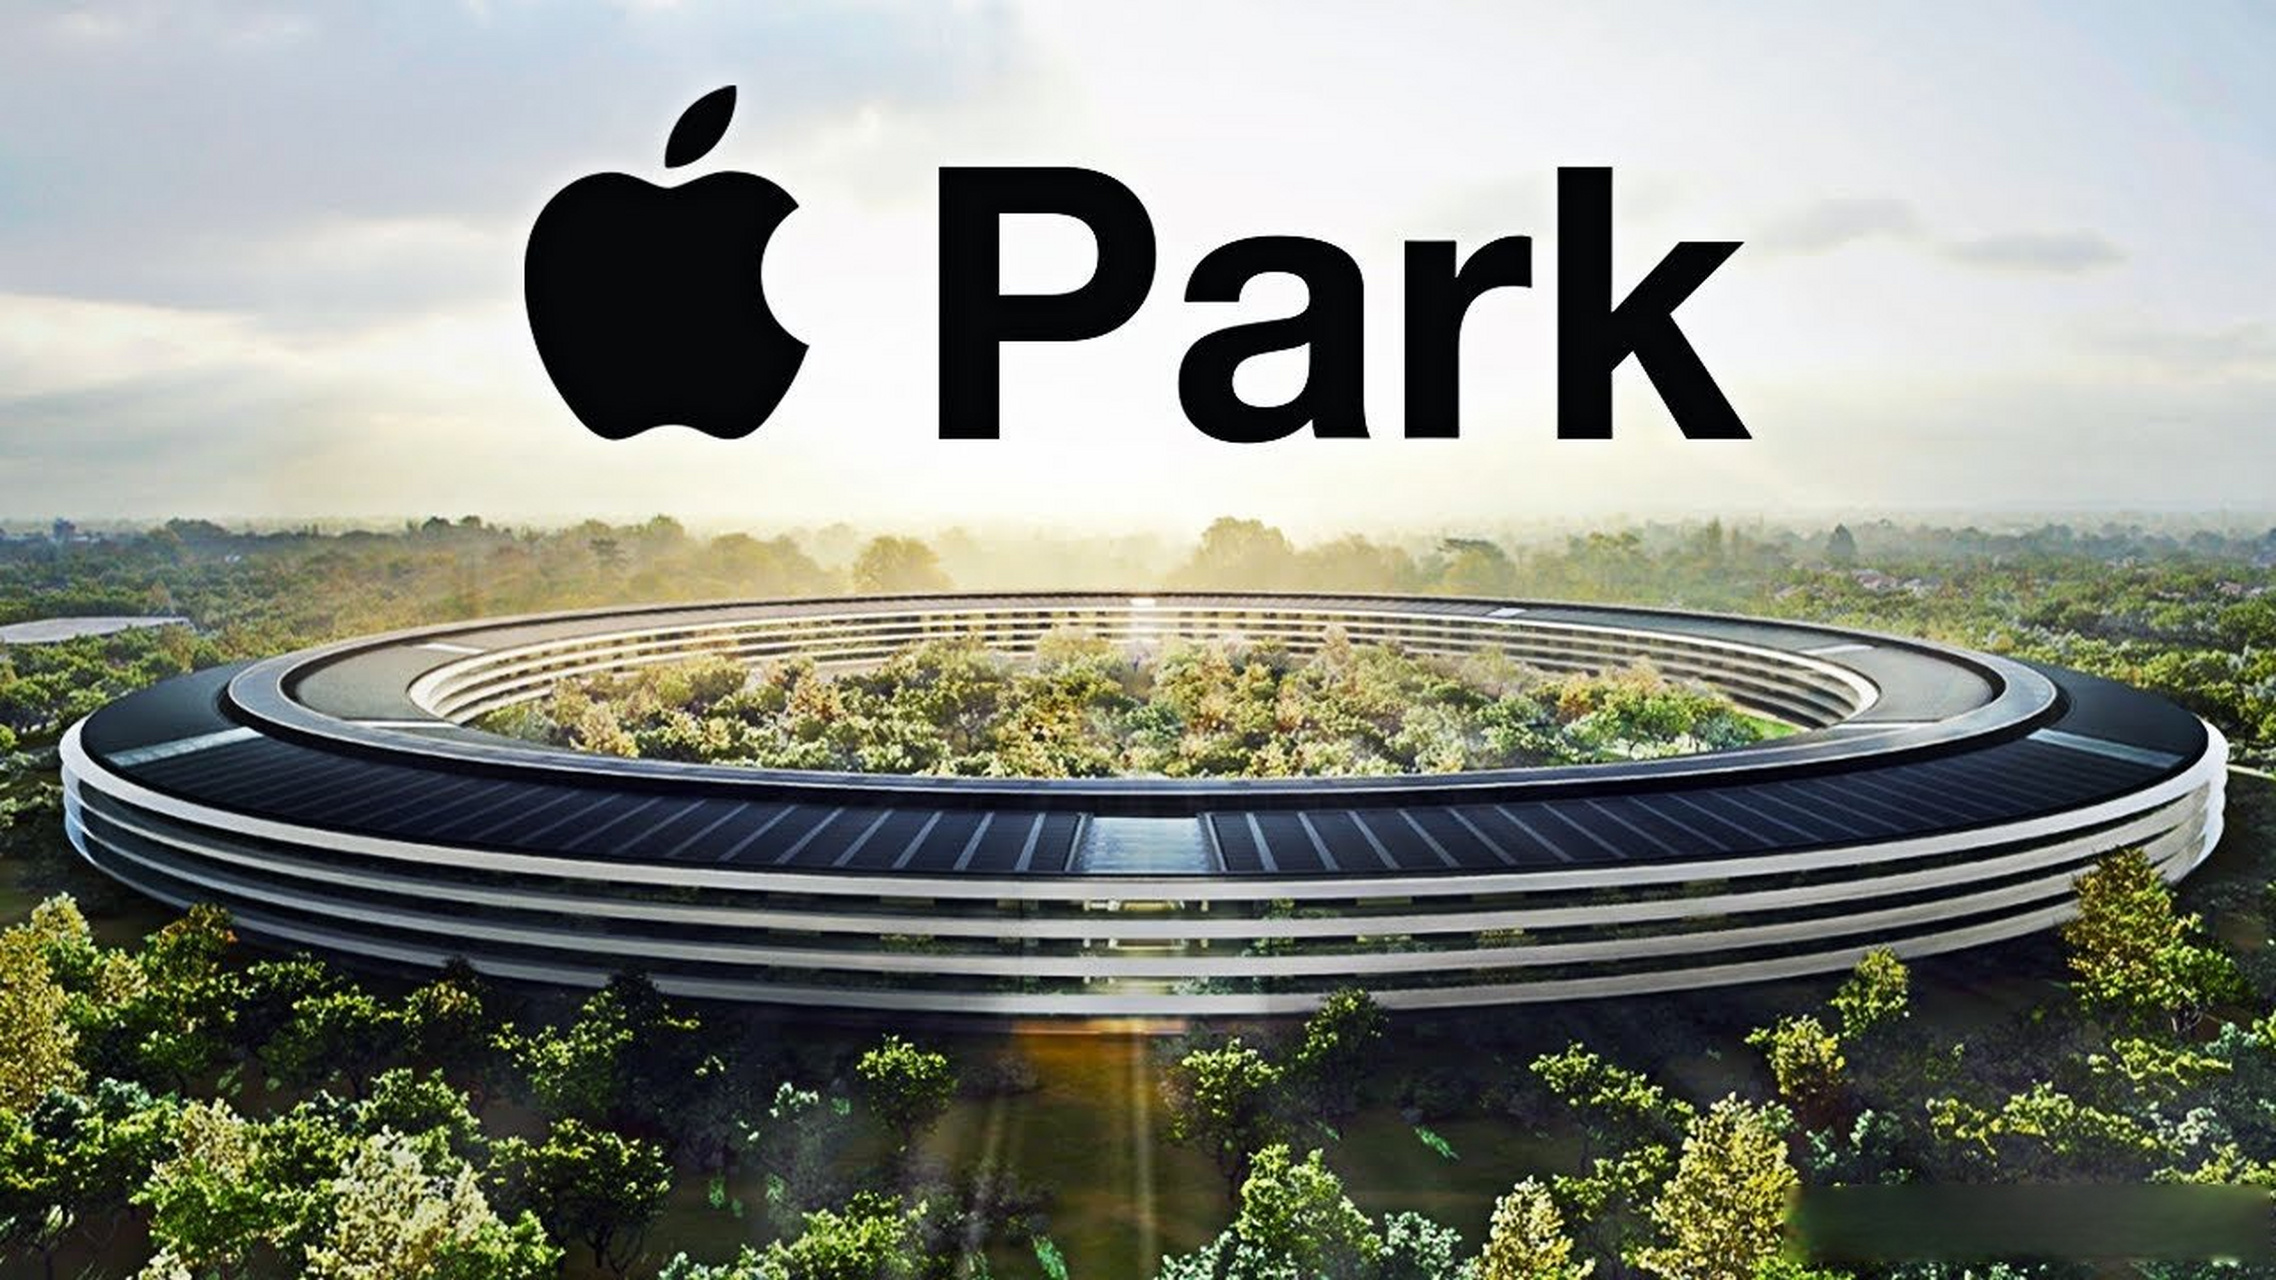 【苹果申请applepark图形商标 】 据patently apple报道,苹果公司已经